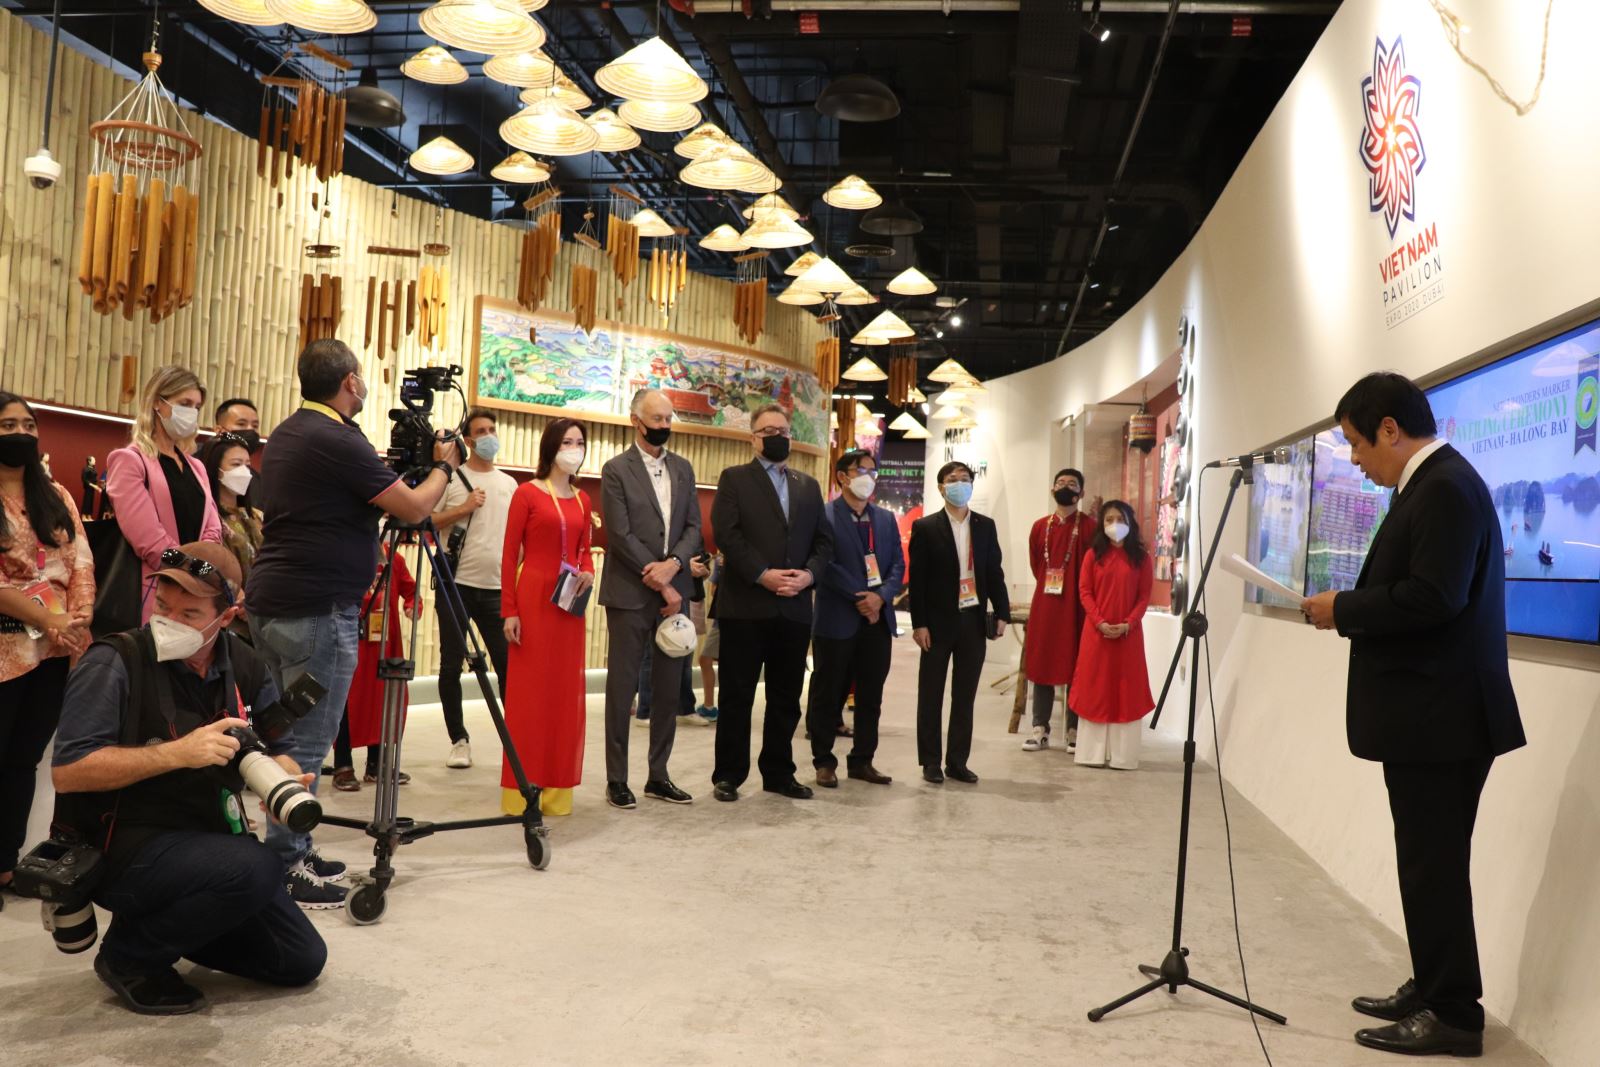 Di sản Thế giới Vịnh Hạ Long - Kỳ quan mới của thế giới được tôn vinh tại  EXPO 2020 Dubai 